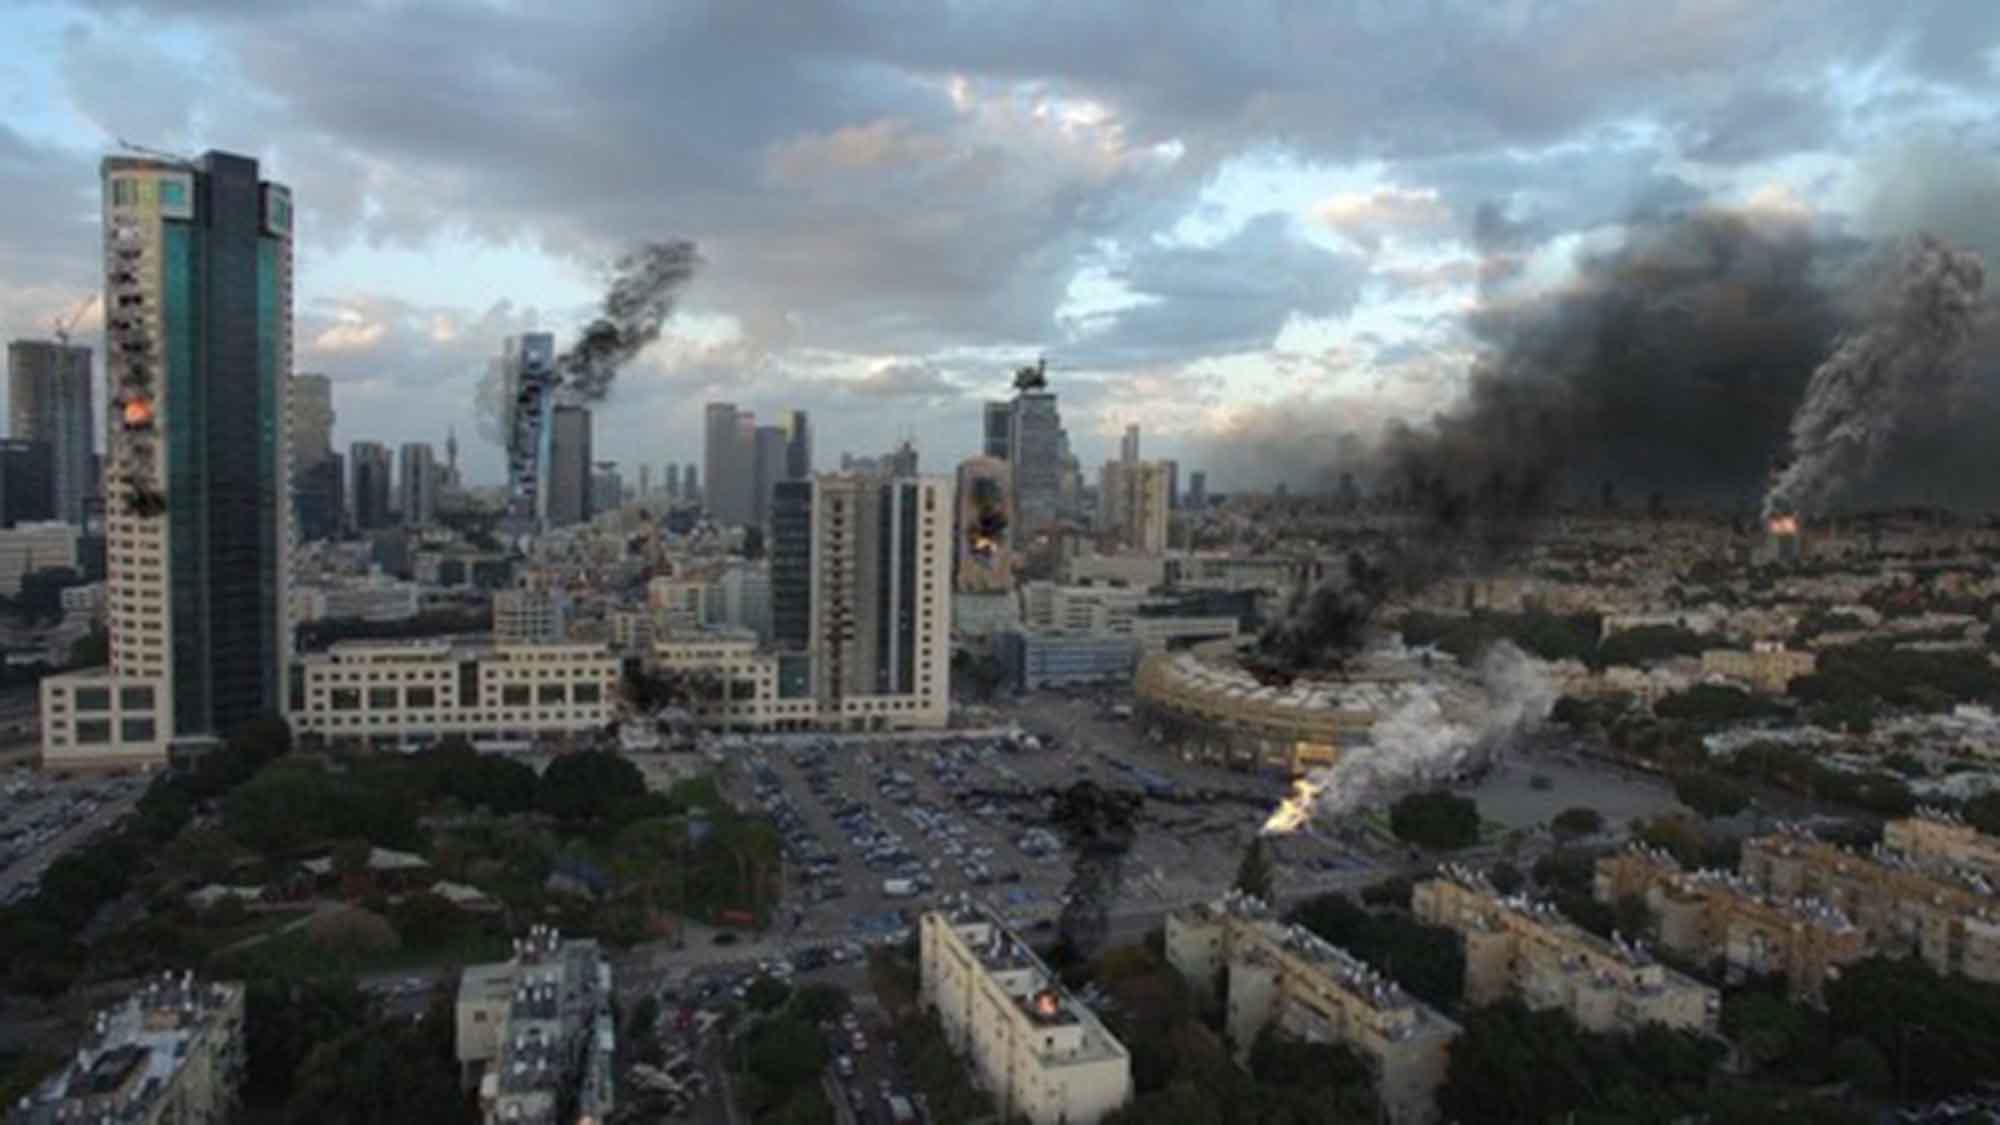 Terroranschläge in Israel – was Reisende jetzt wissen müssen